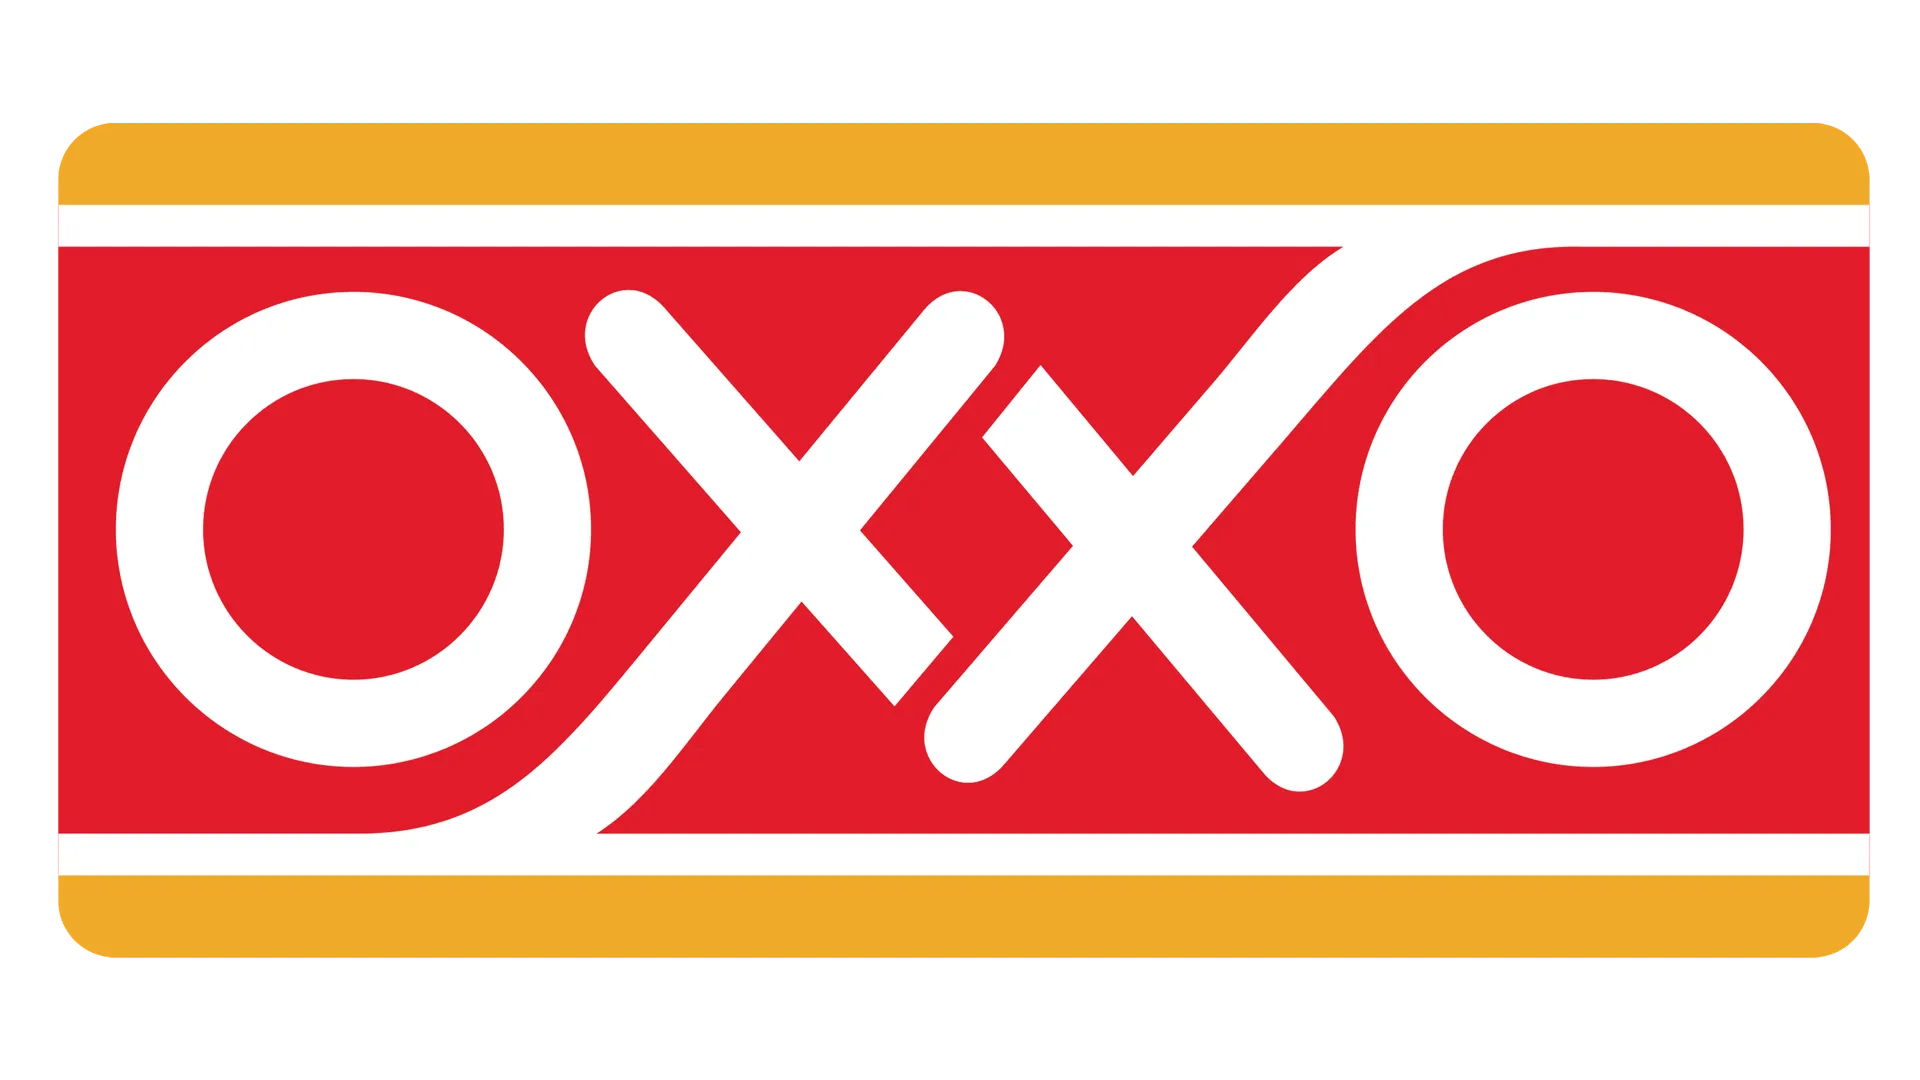 OXXO logo de catálogo